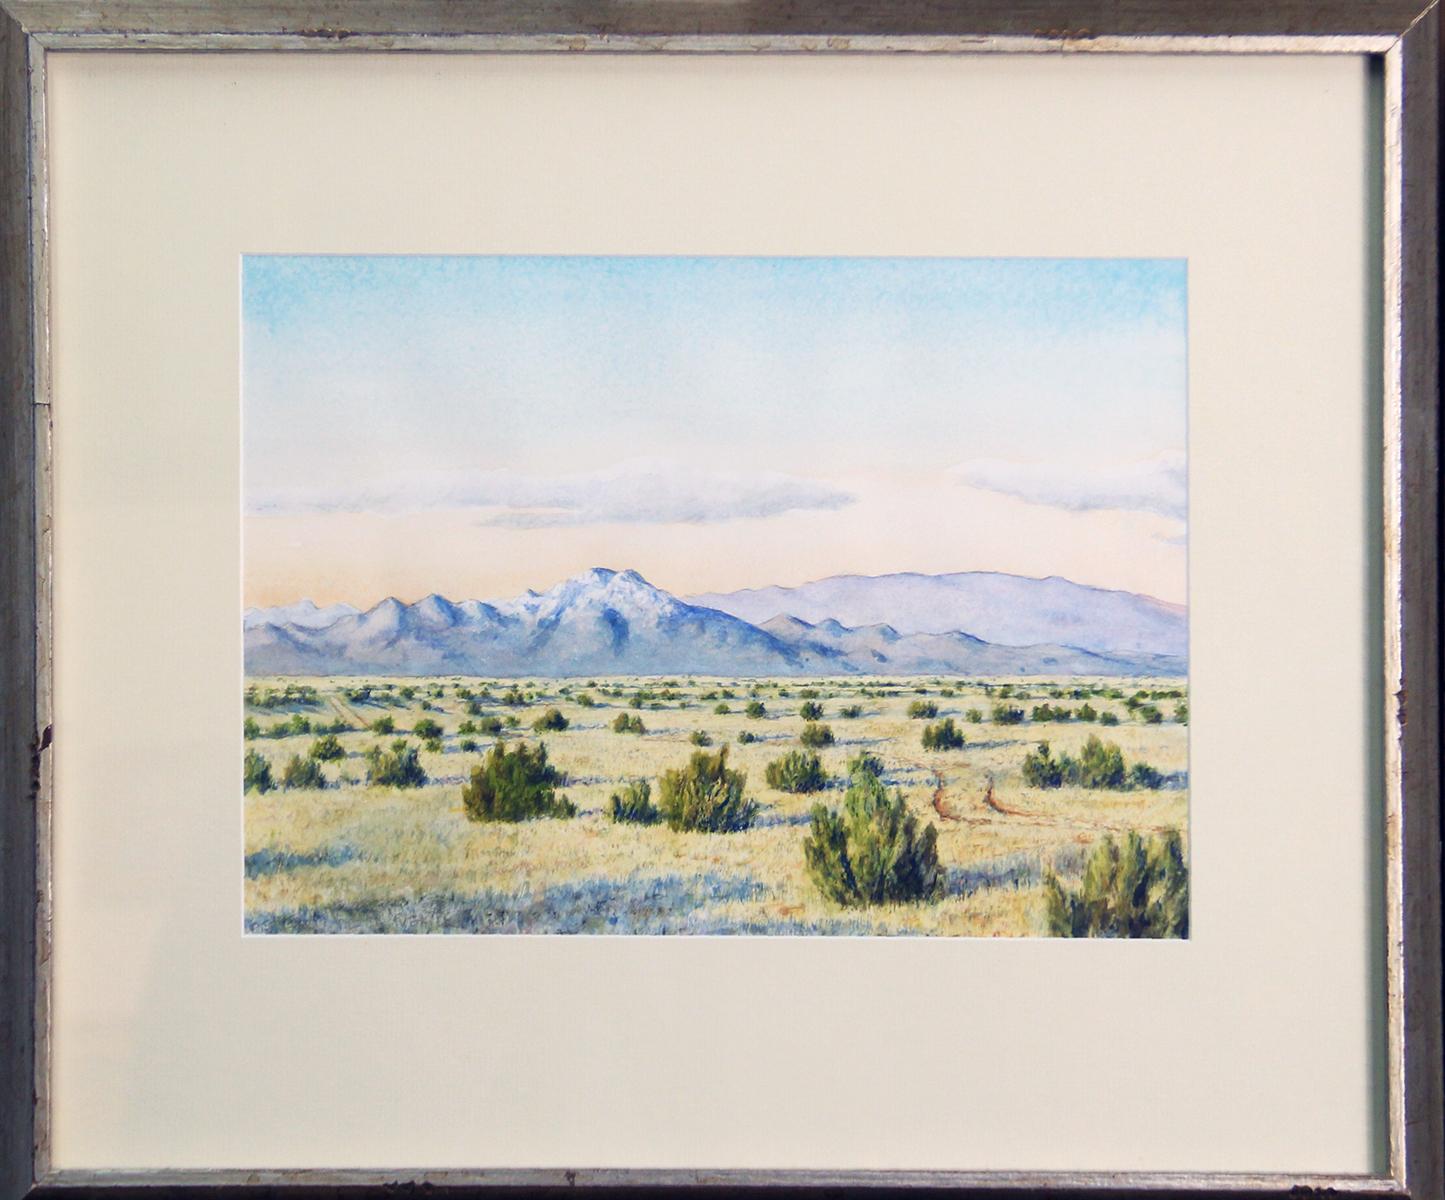 Peter de la Fuente Landscape Painting - Peter De La Fuente (New Mexico, Spain, 1959 - ), "Near Pueblo Canyon", 2007